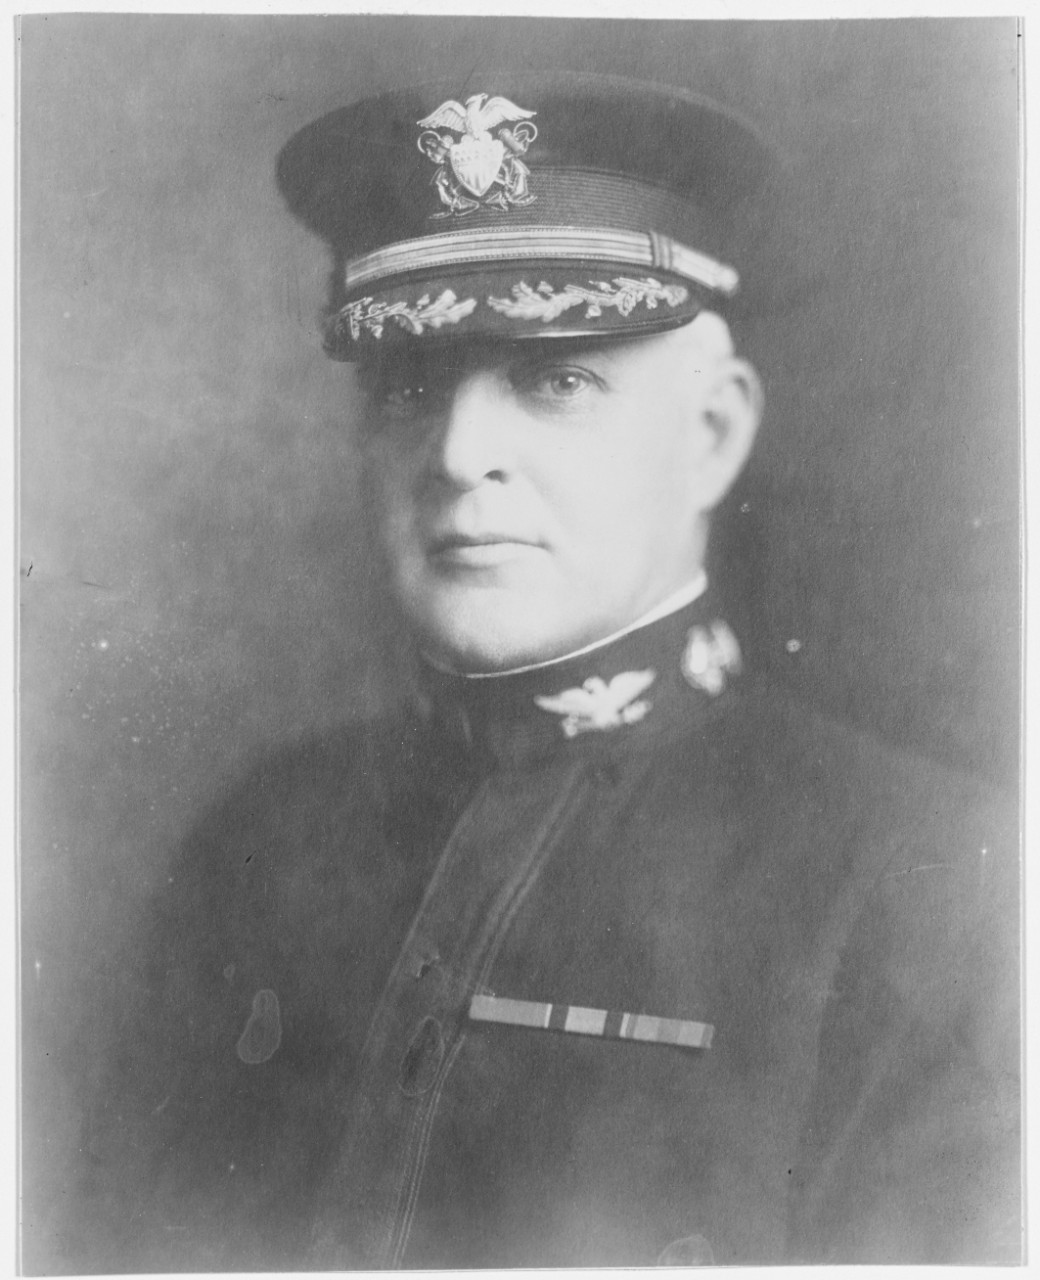 Captain George Williams, USN